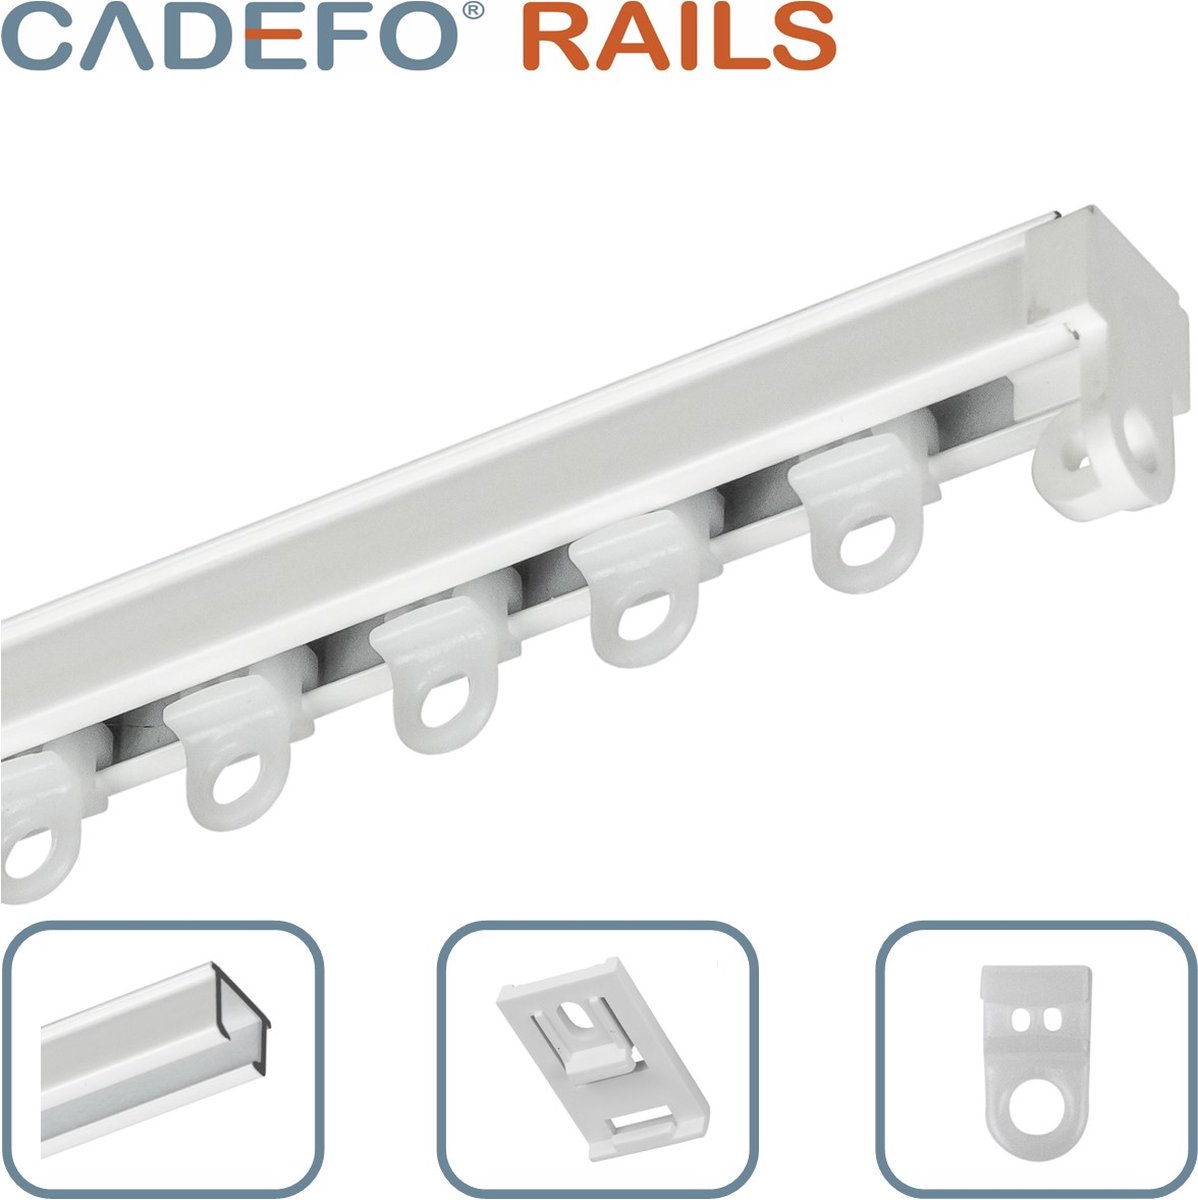 CADEFO RAILS (401 - 450 cm) Gordijnrails - Compleet op maat! - UIT 1 STUK - Leverbaar tot 6 meter - Plafondbevestiging - Lengte 413 cm